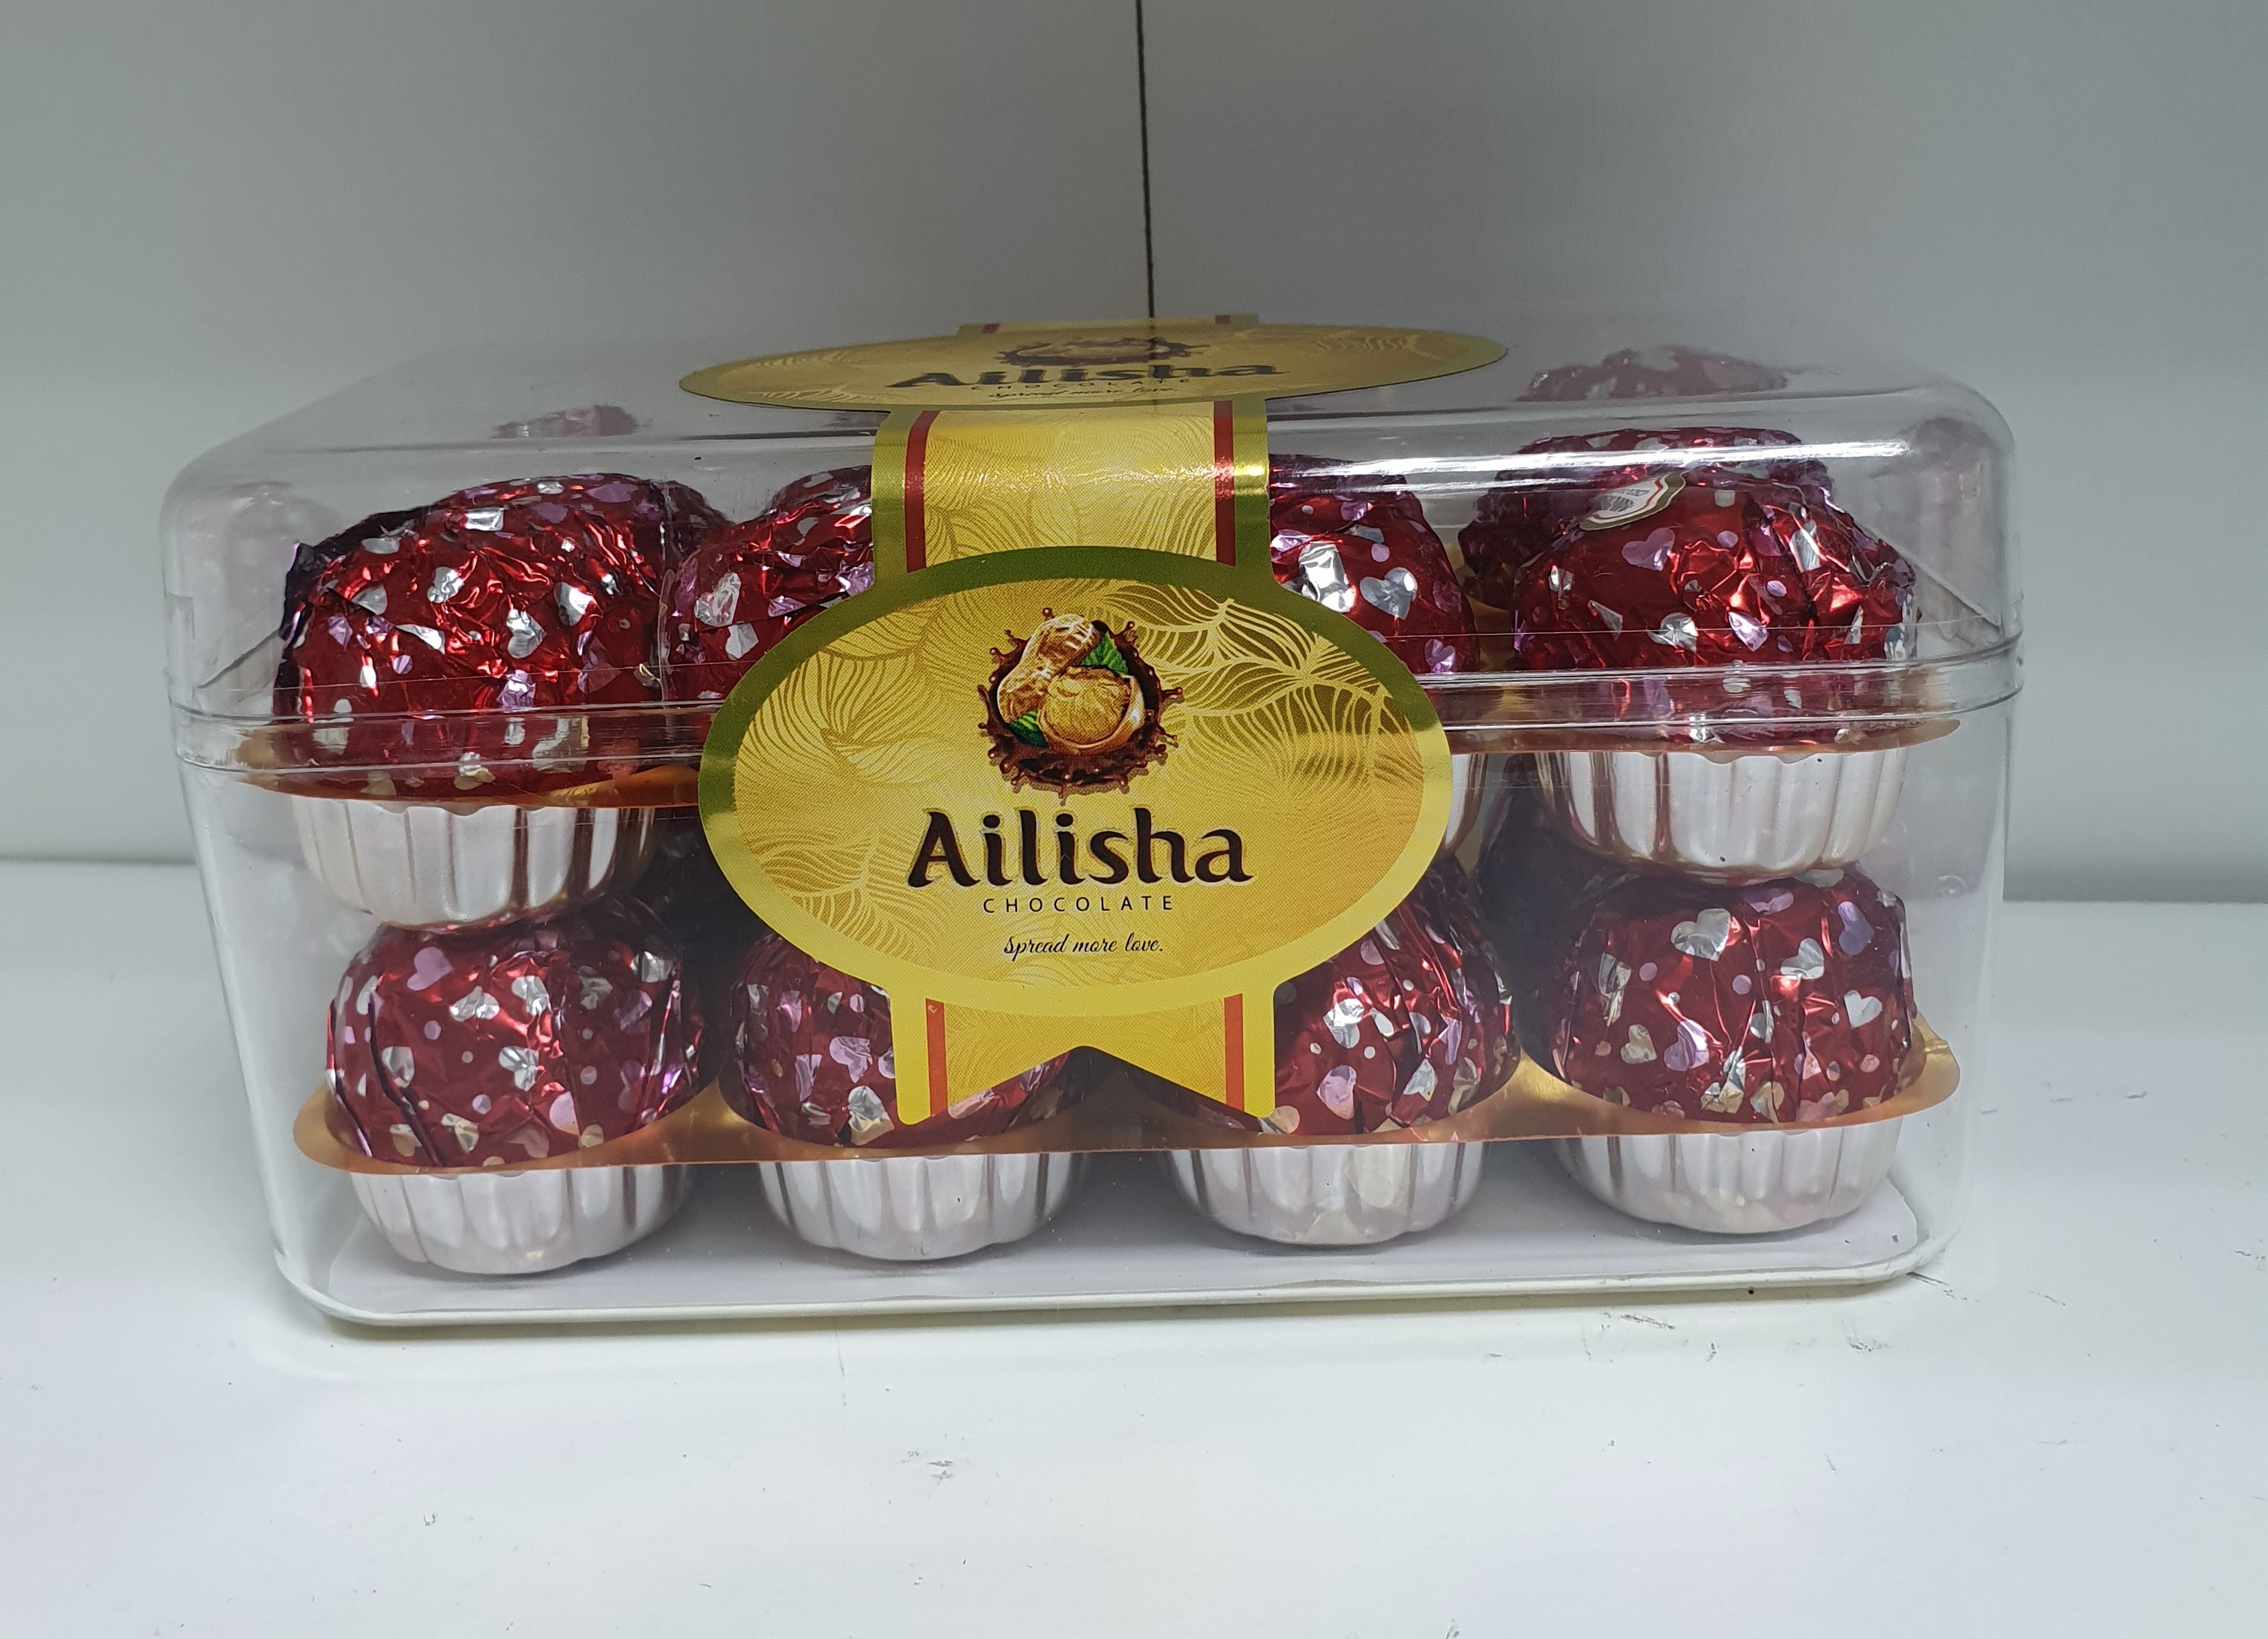 (FOOD) AILISHA CHOCOLATE 200 G